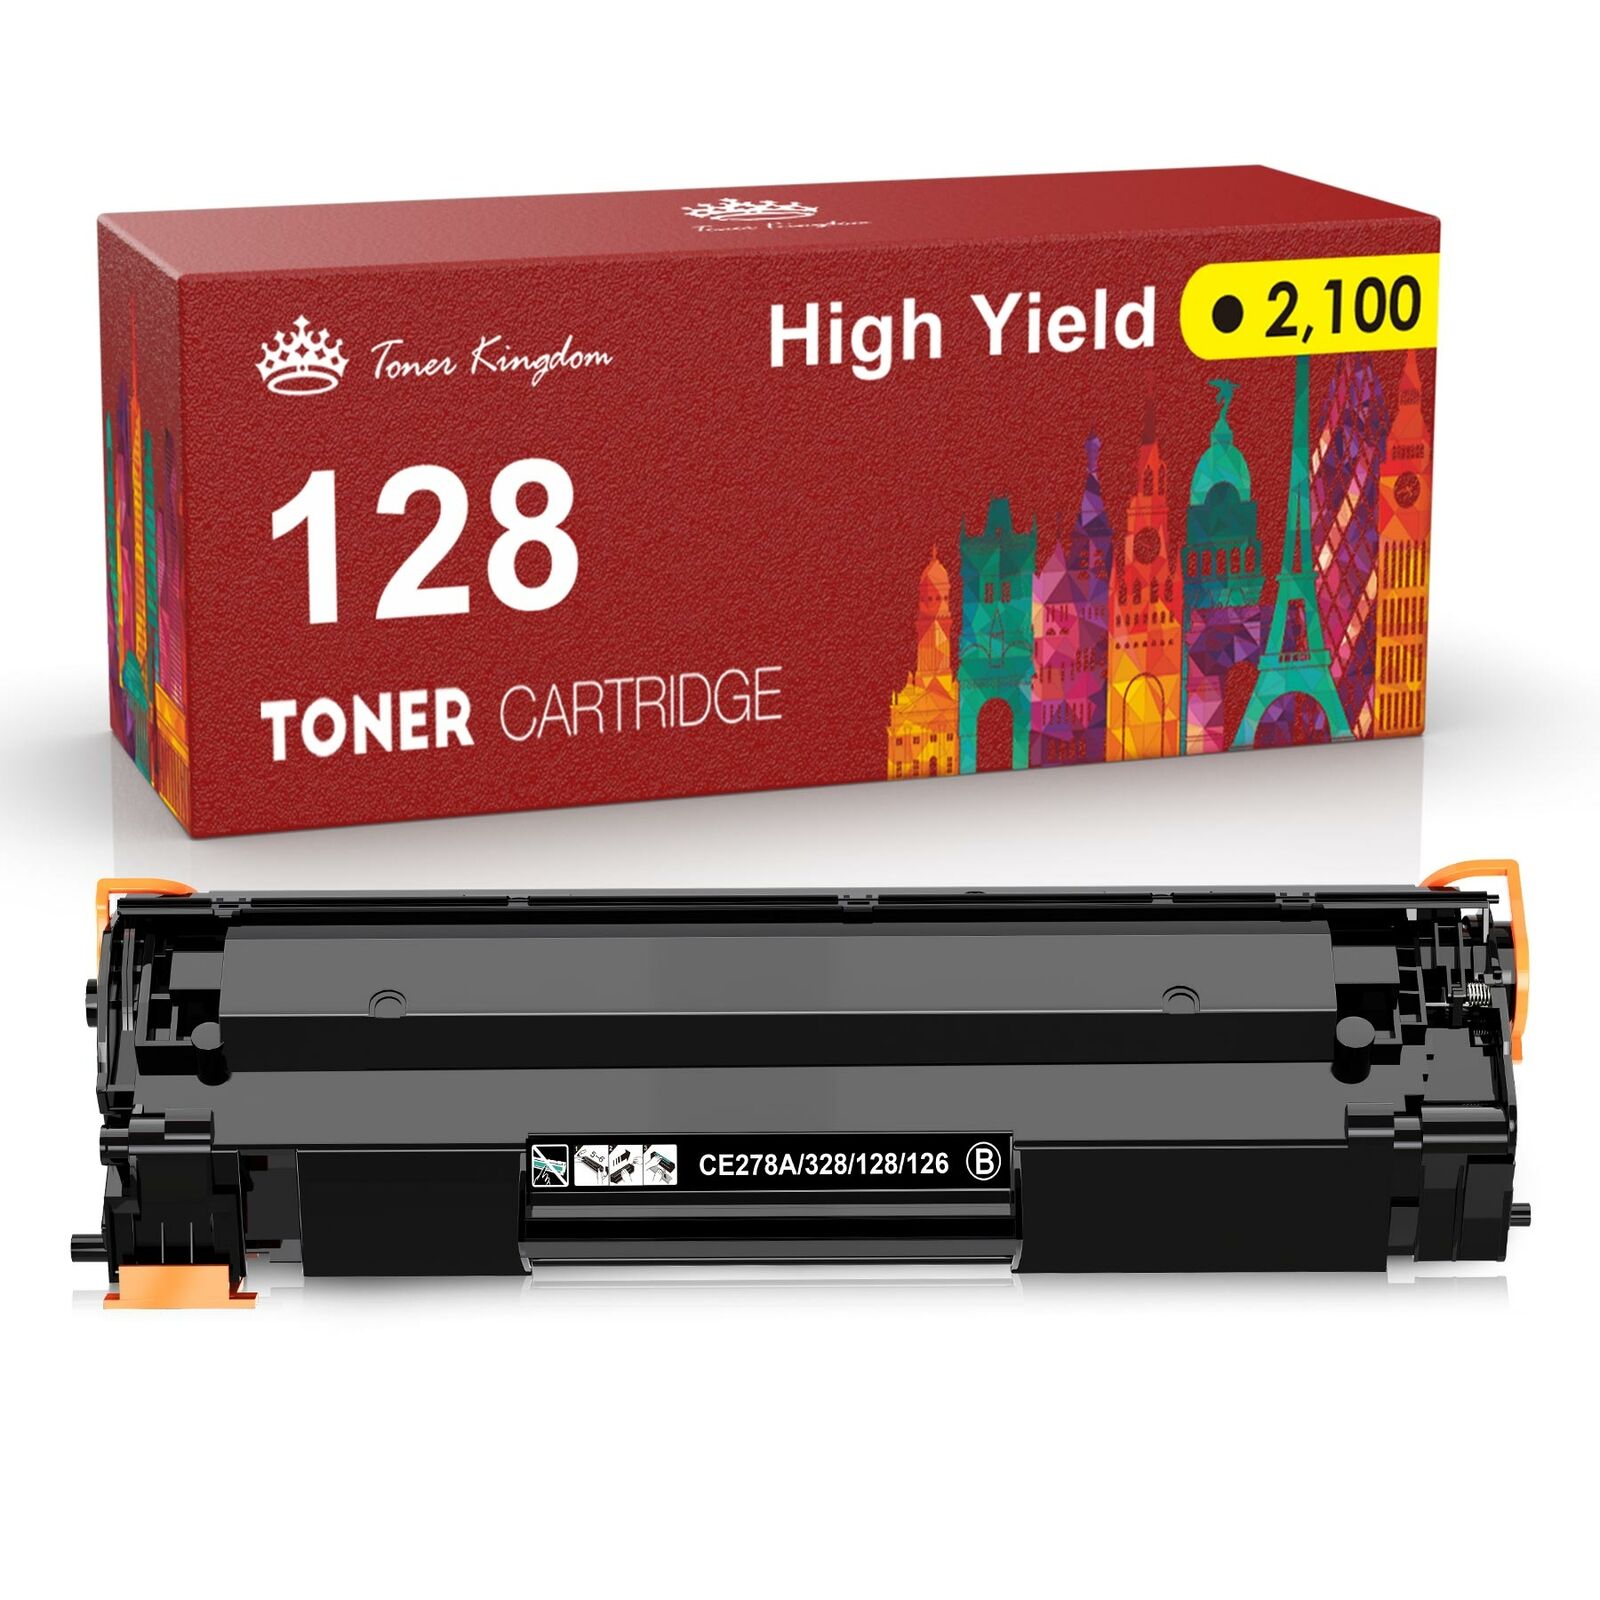 CRG 128 Toner compatible for Canon 128 imageClass MF4452 MF4550 MF4450 D530 lot